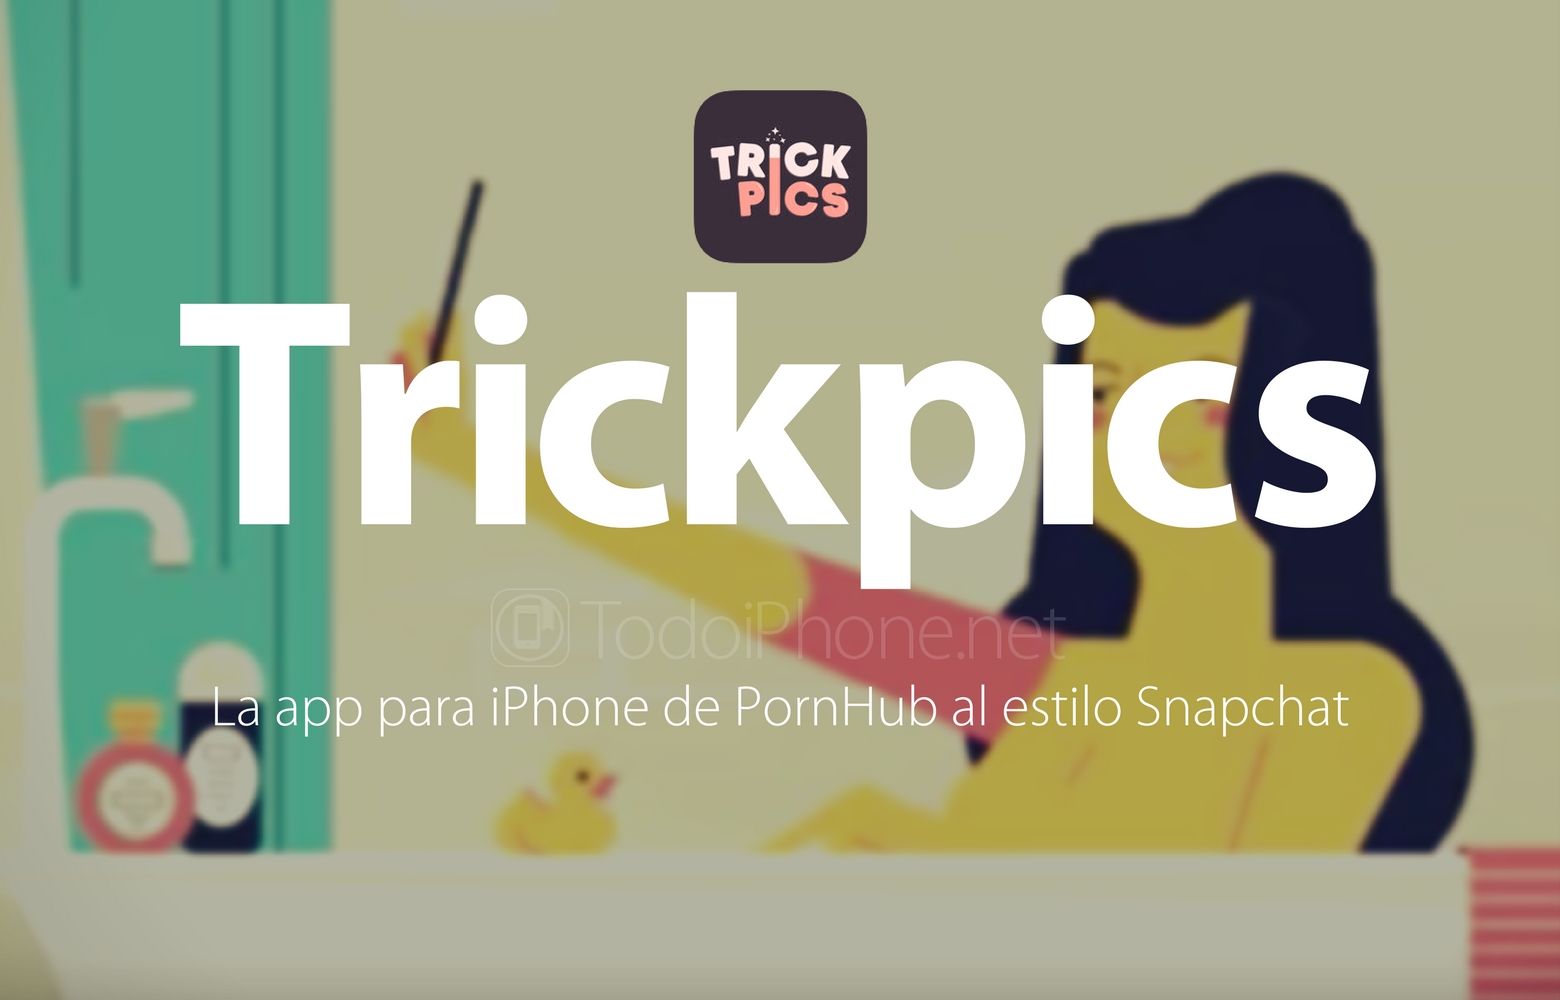 Trickpics, la app para iPhone de PornHub al estilo Snapchat